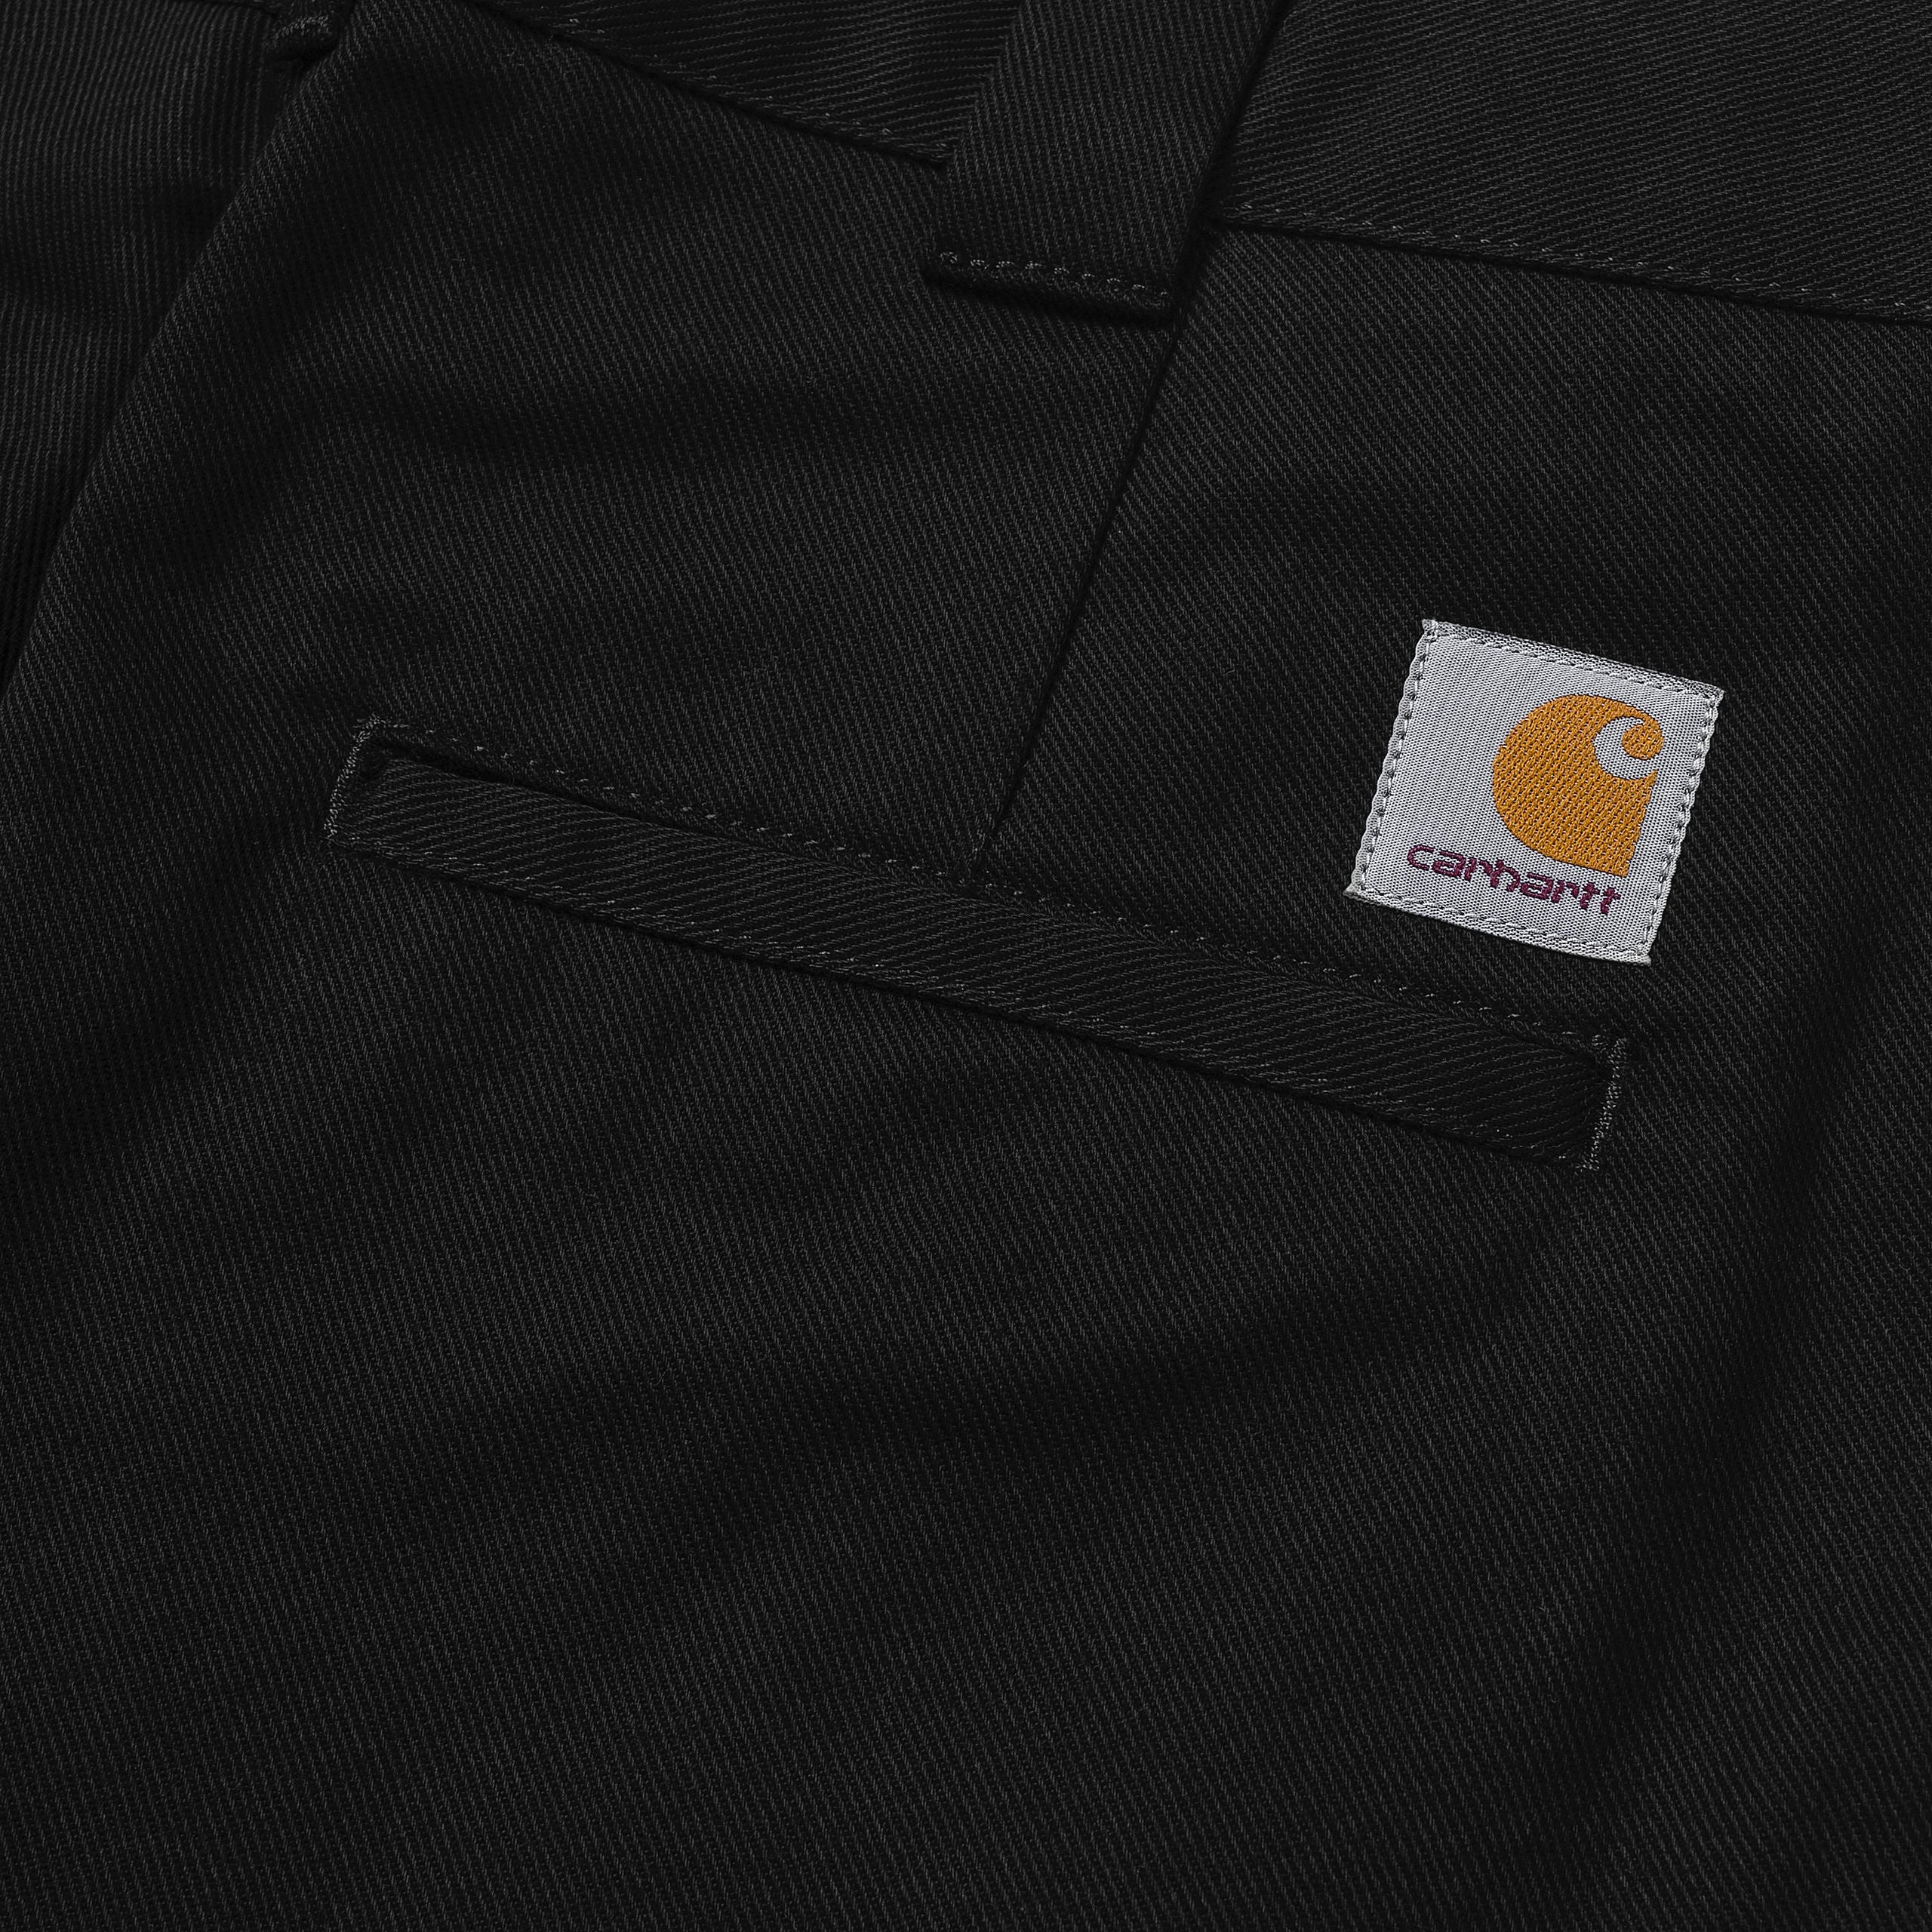 Carhartt WIP Craft Pant - Black Rinsed